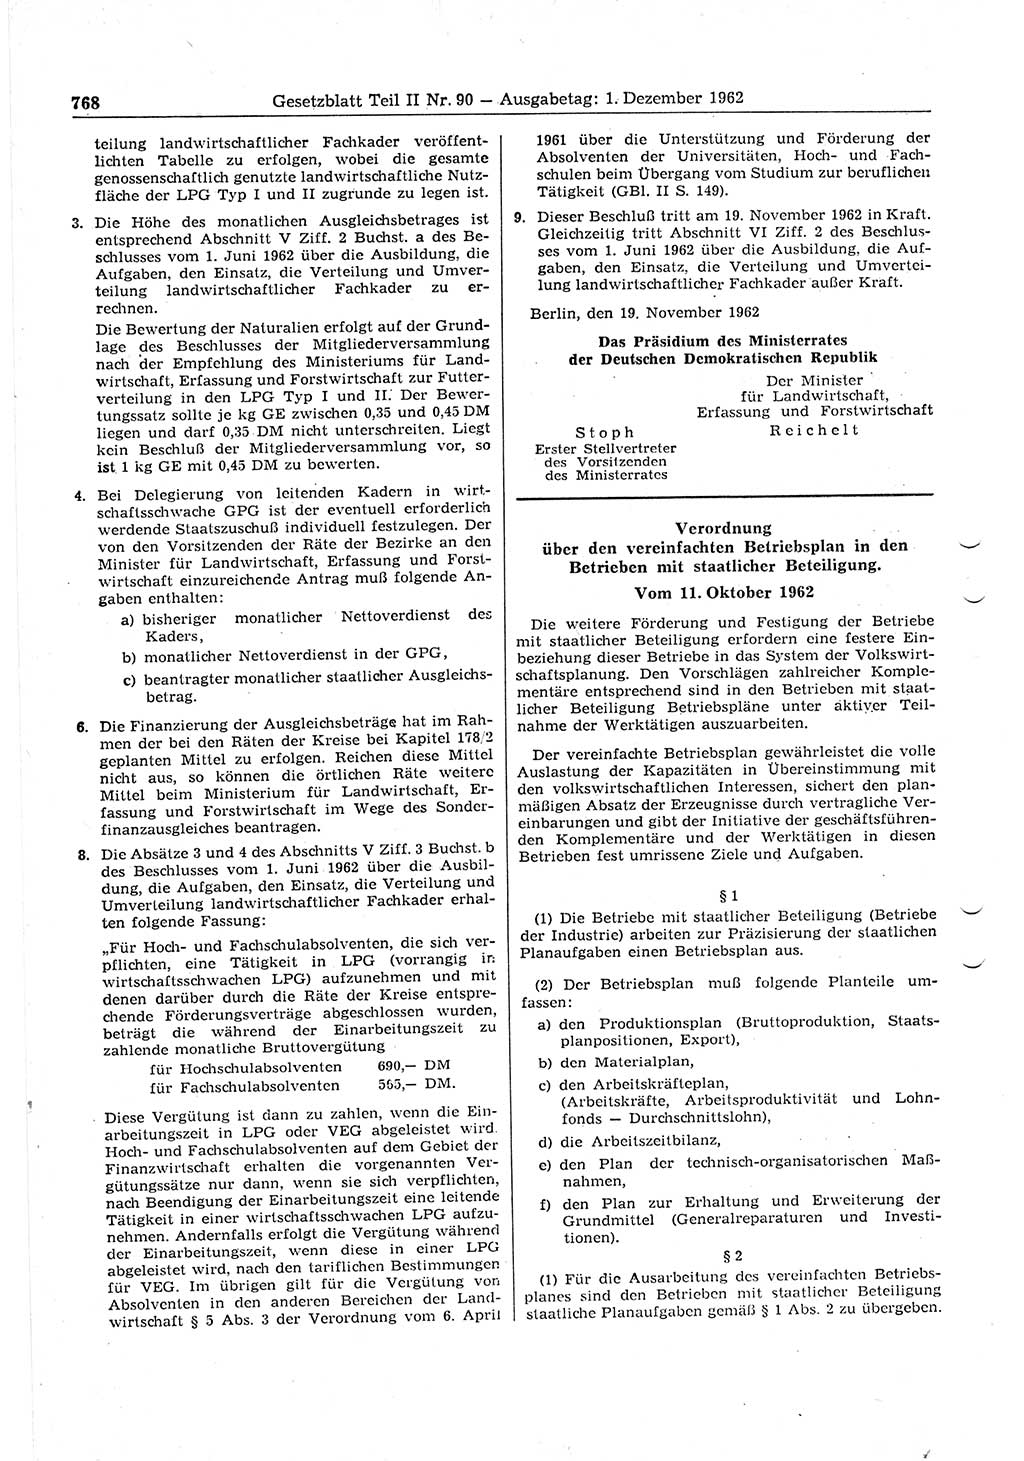 Gesetzblatt (GBl.) der Deutschen Demokratischen Republik (DDR) Teil ⅠⅠ 1962, Seite 768 (GBl. DDR ⅠⅠ 1962, S. 768)